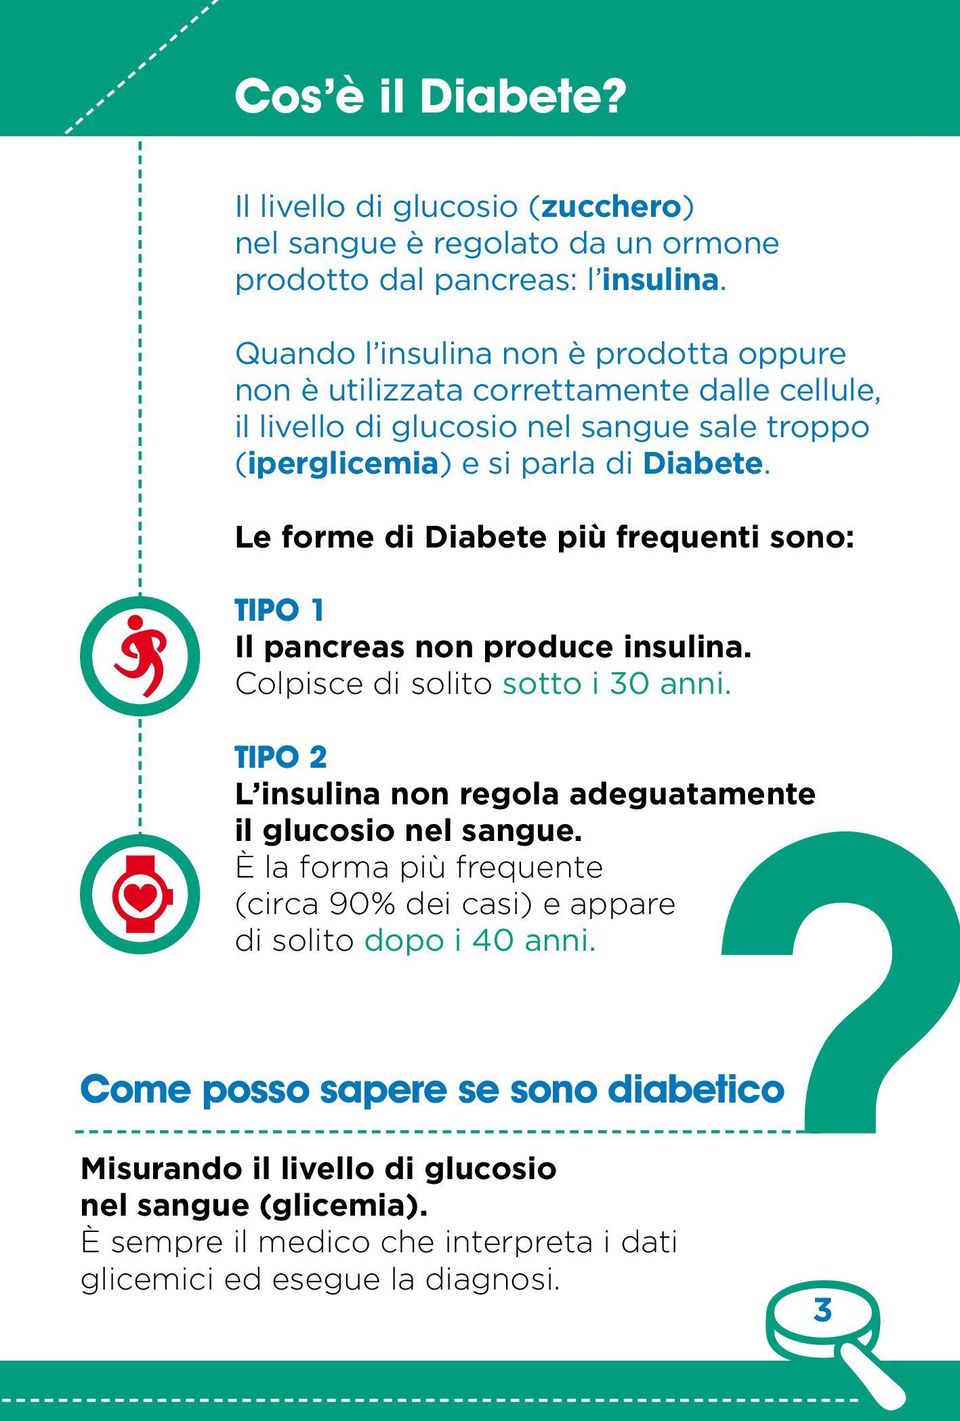 Le forme di Diabete più frequenti sono: Tipo 1 Il pancreas non produce insulina. Colpisce di solito sotto i 30 anni.